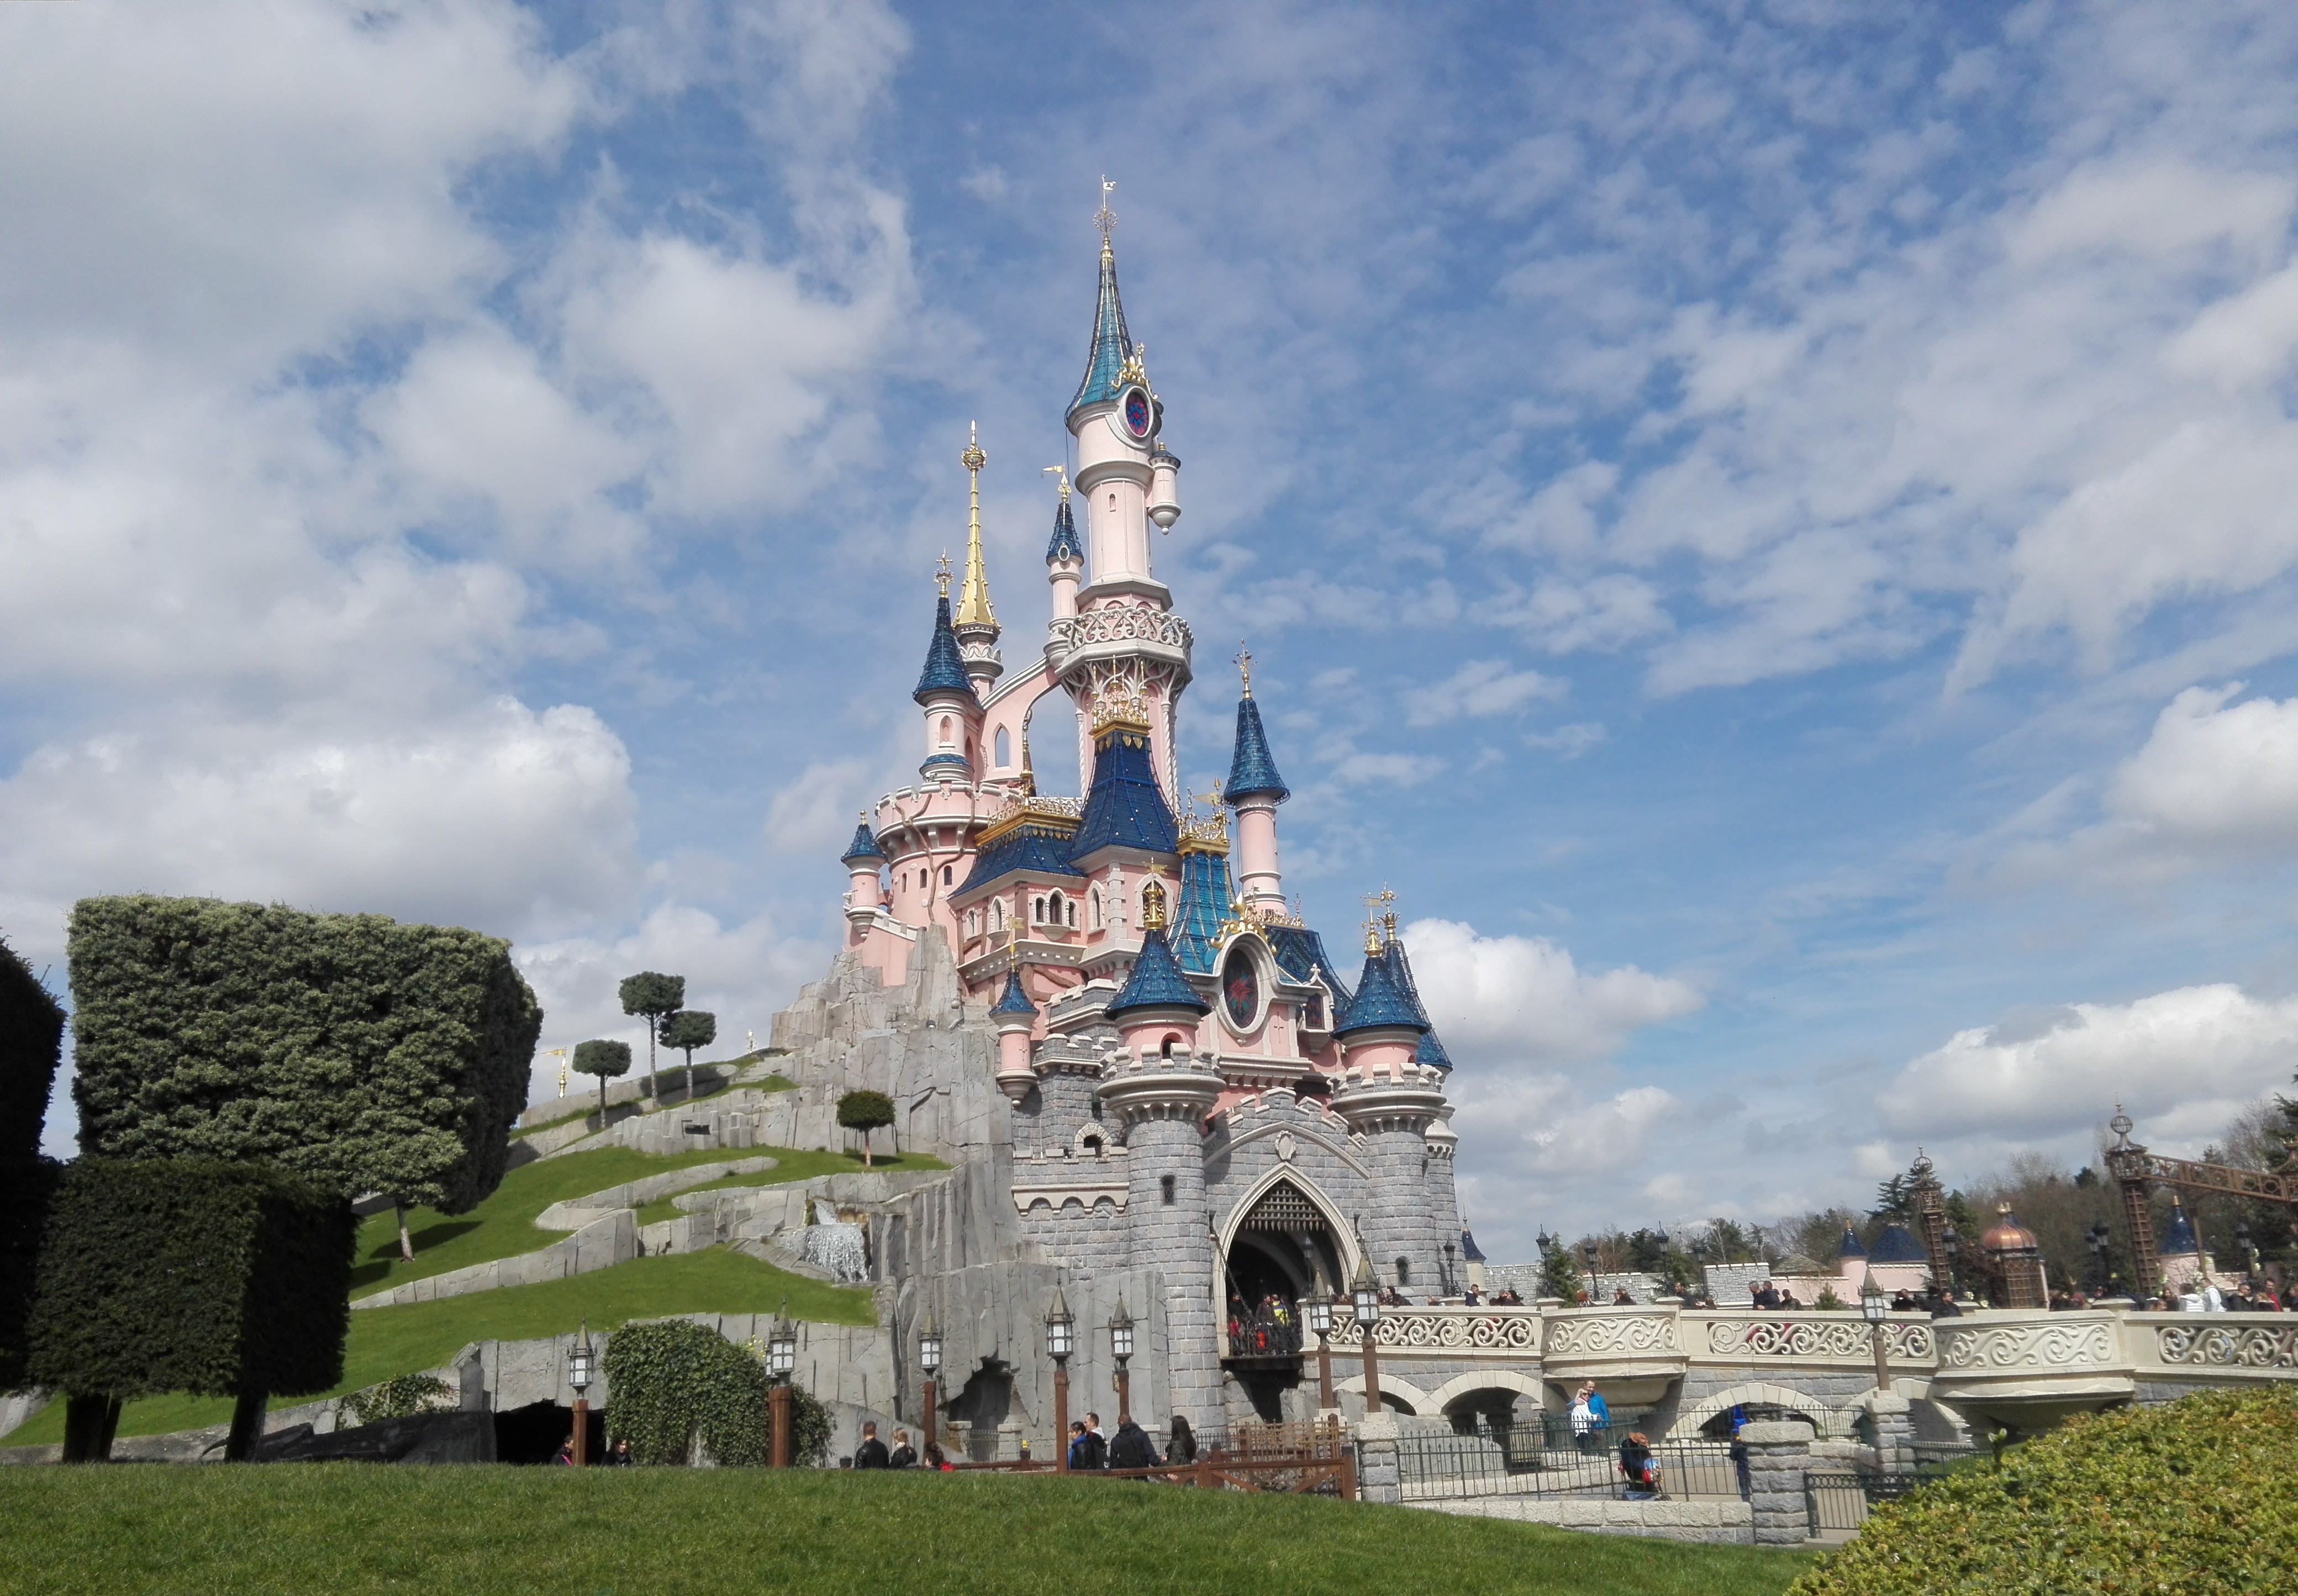 Le château de Disneyland Paris, à Marne-la-Vallée